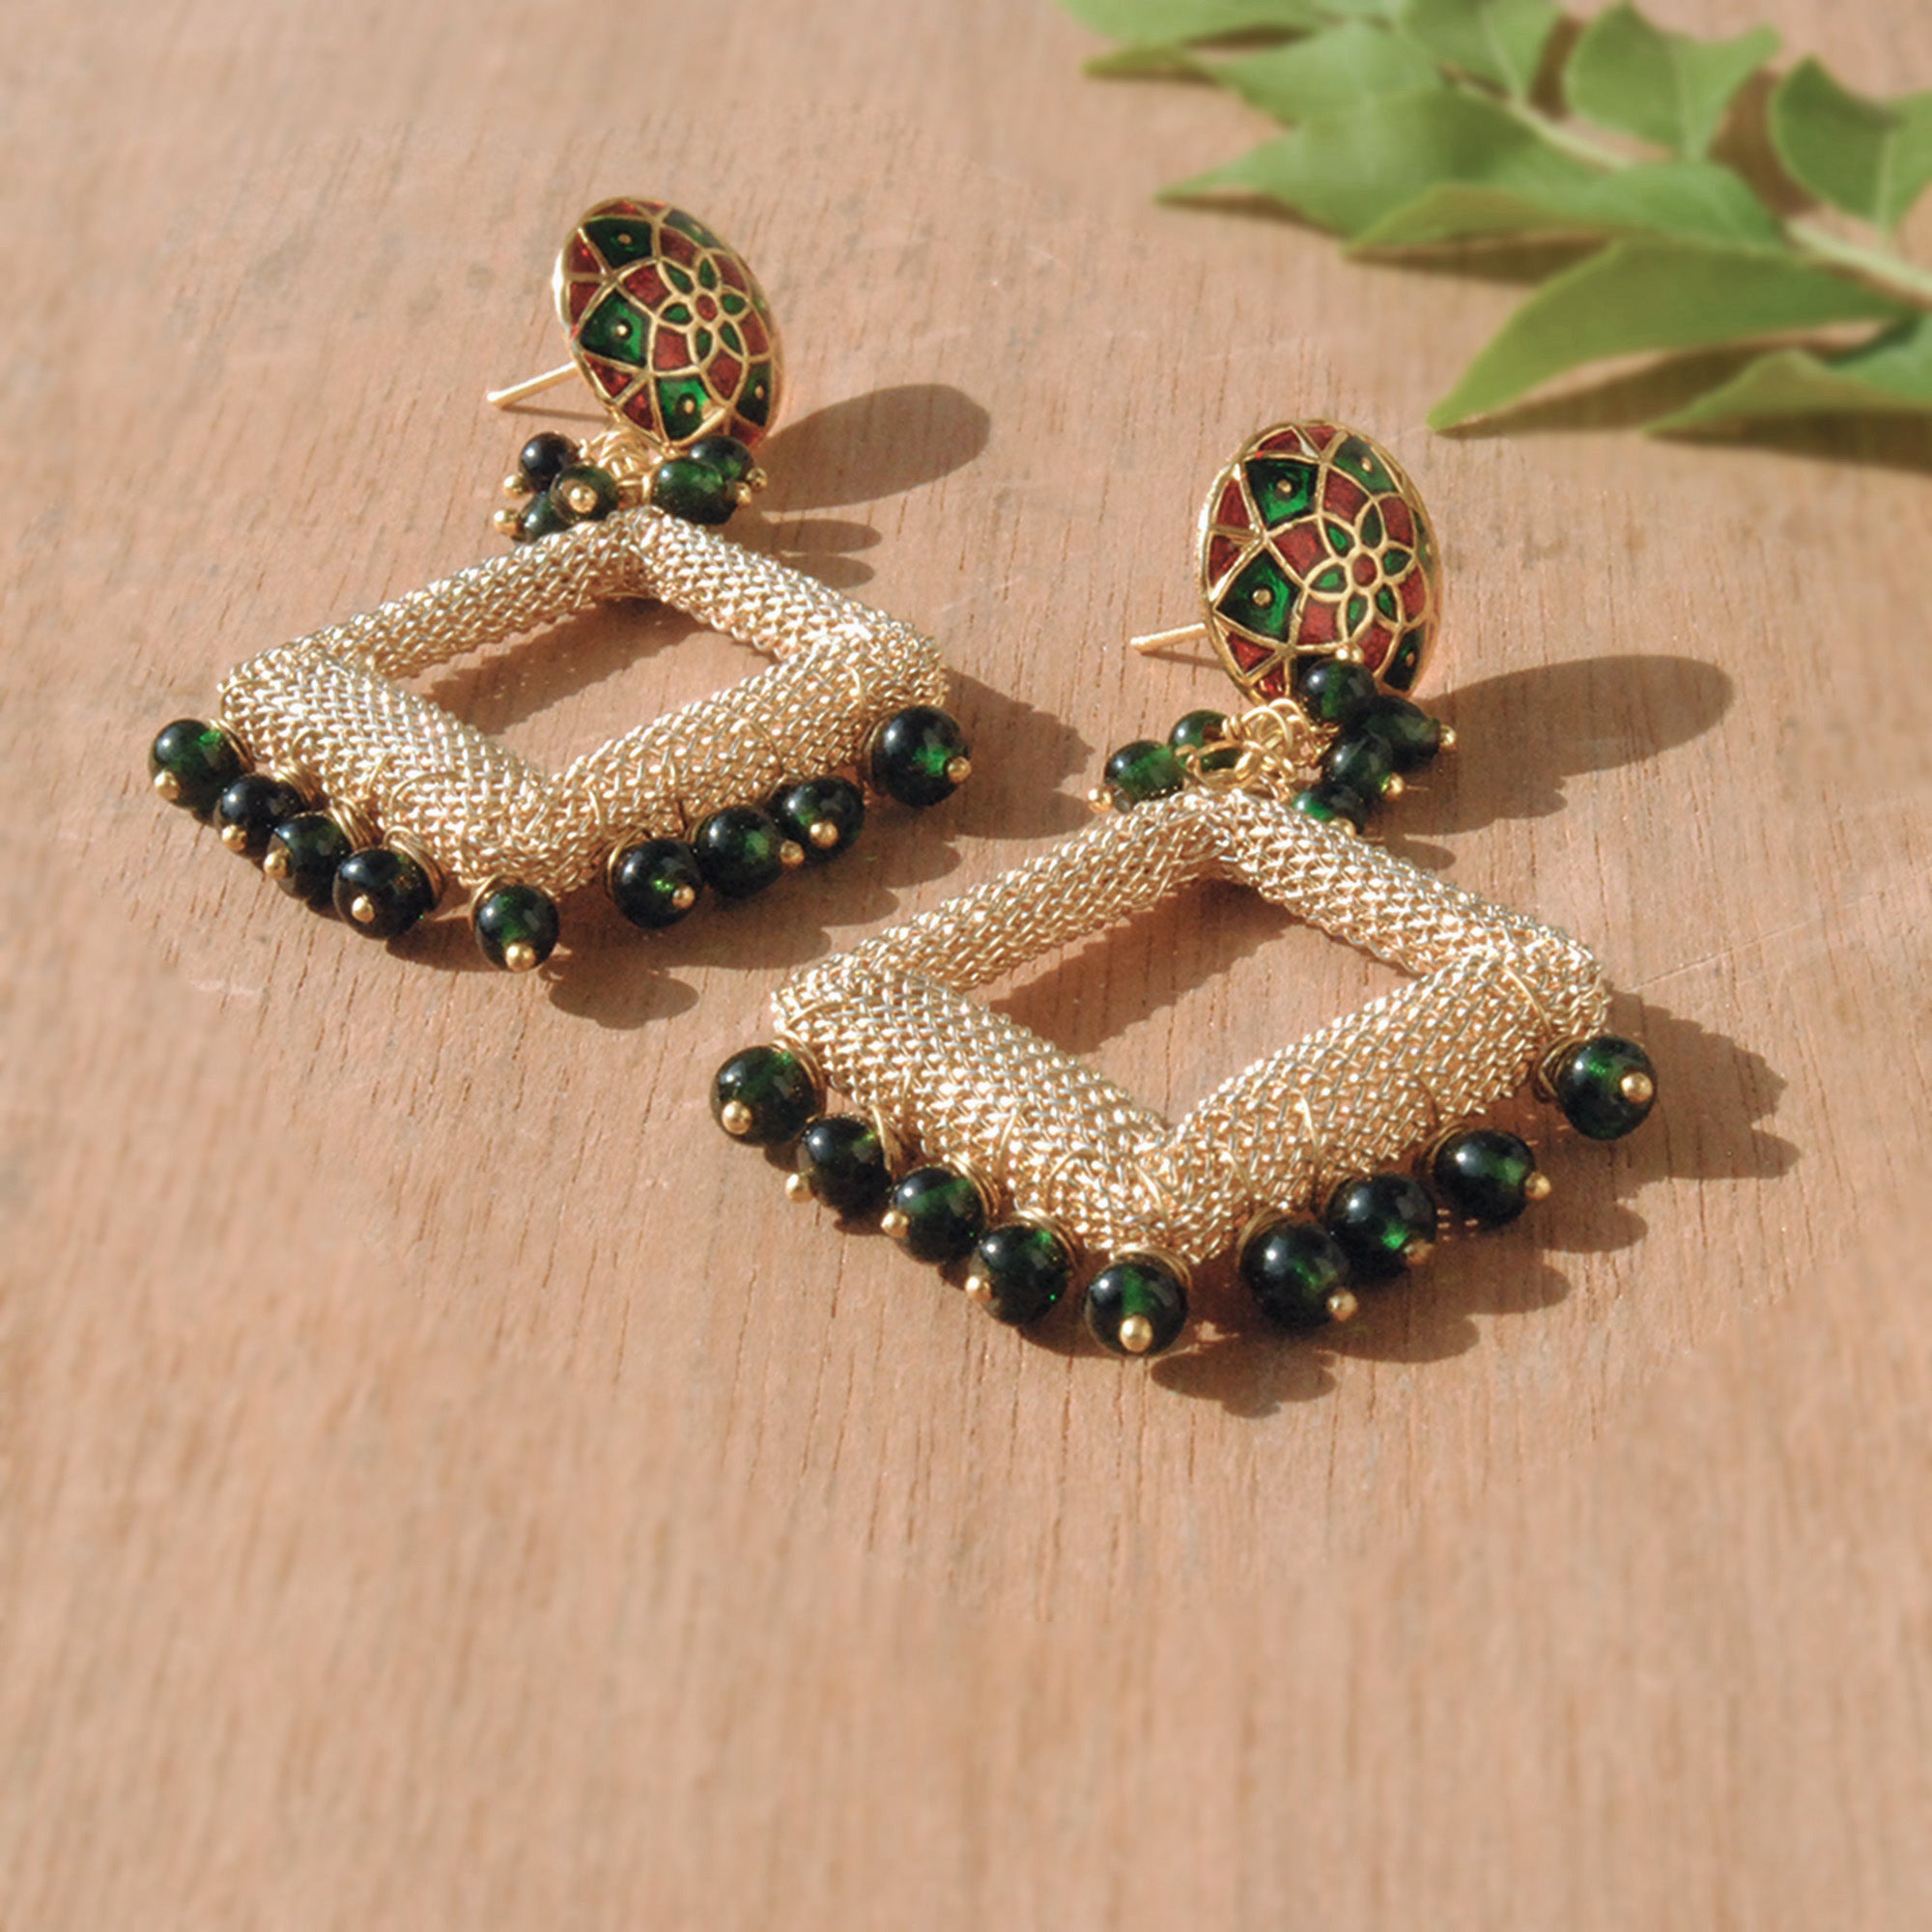 colorful glass beads rhapsody earrings